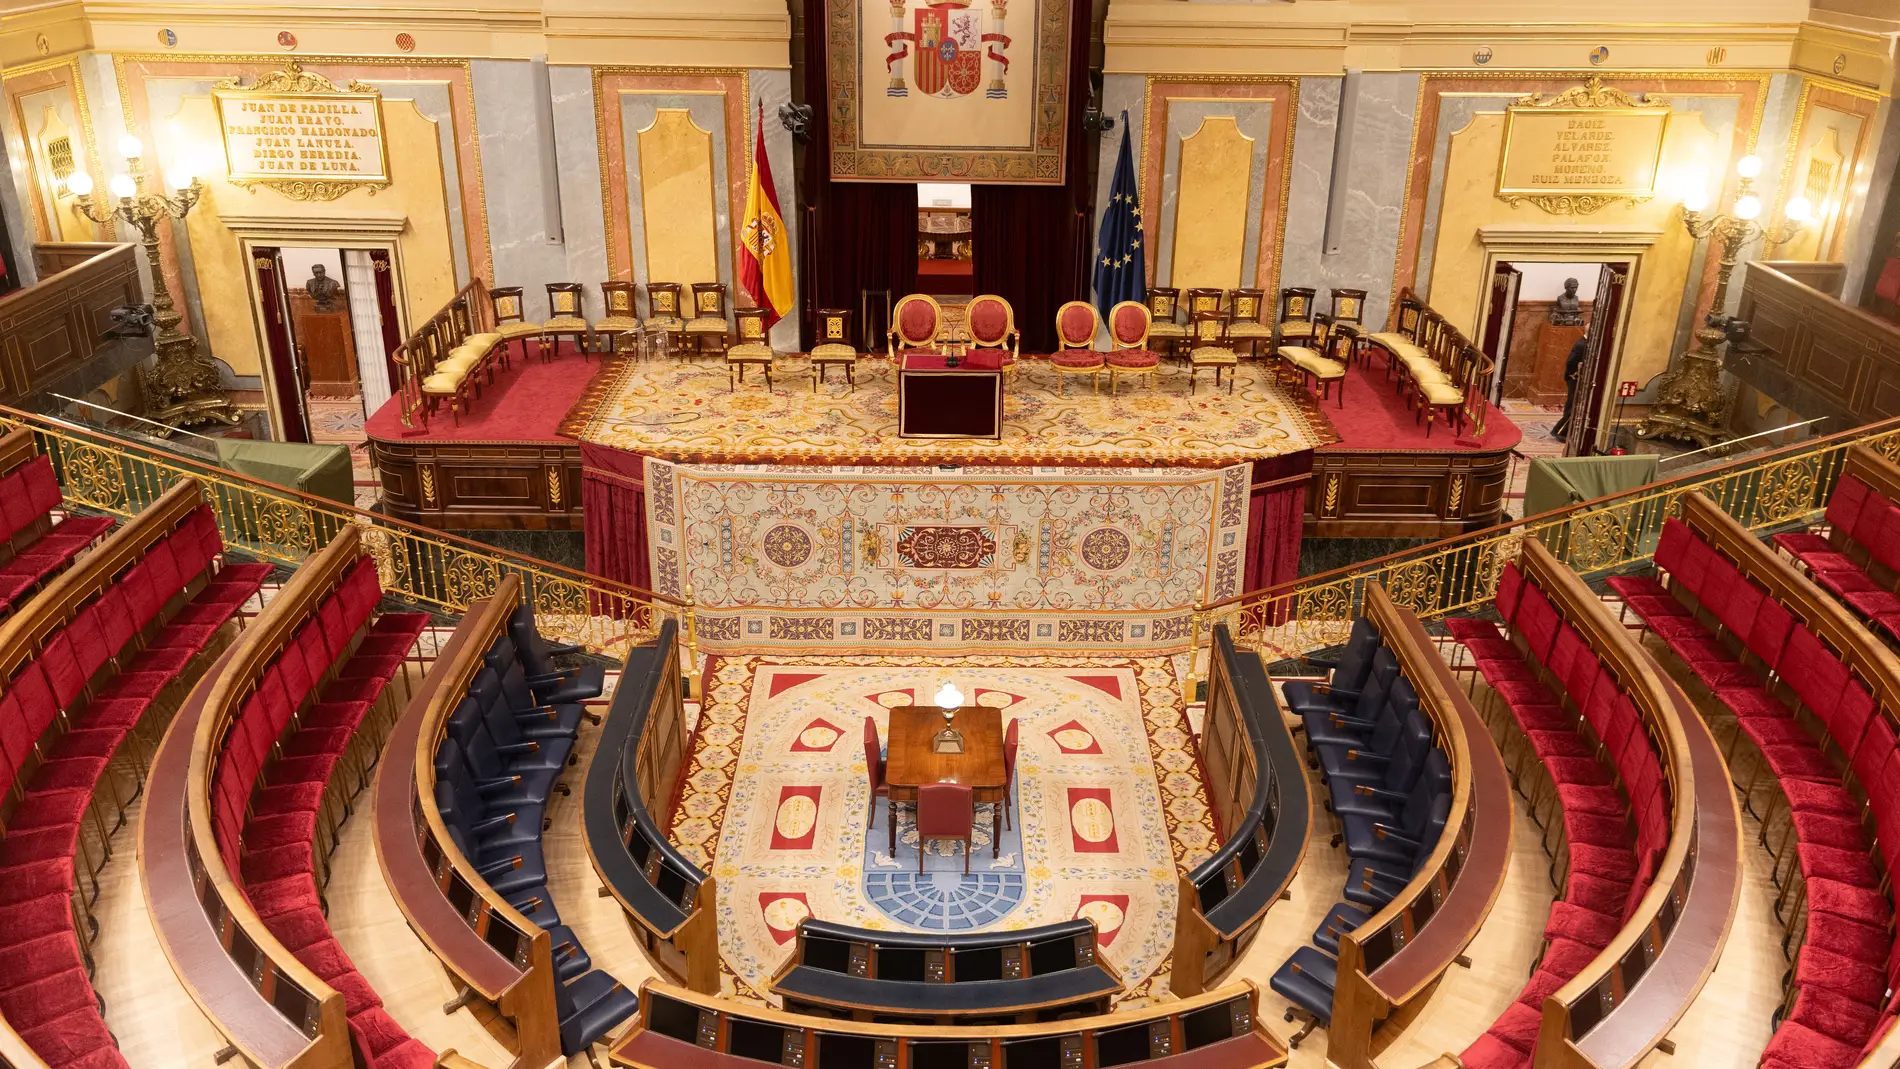 Vista del estrado preparado en el hemiciclo para la jura de la Constitución la Princesa de Asturias, en el Congreso de los Diputados